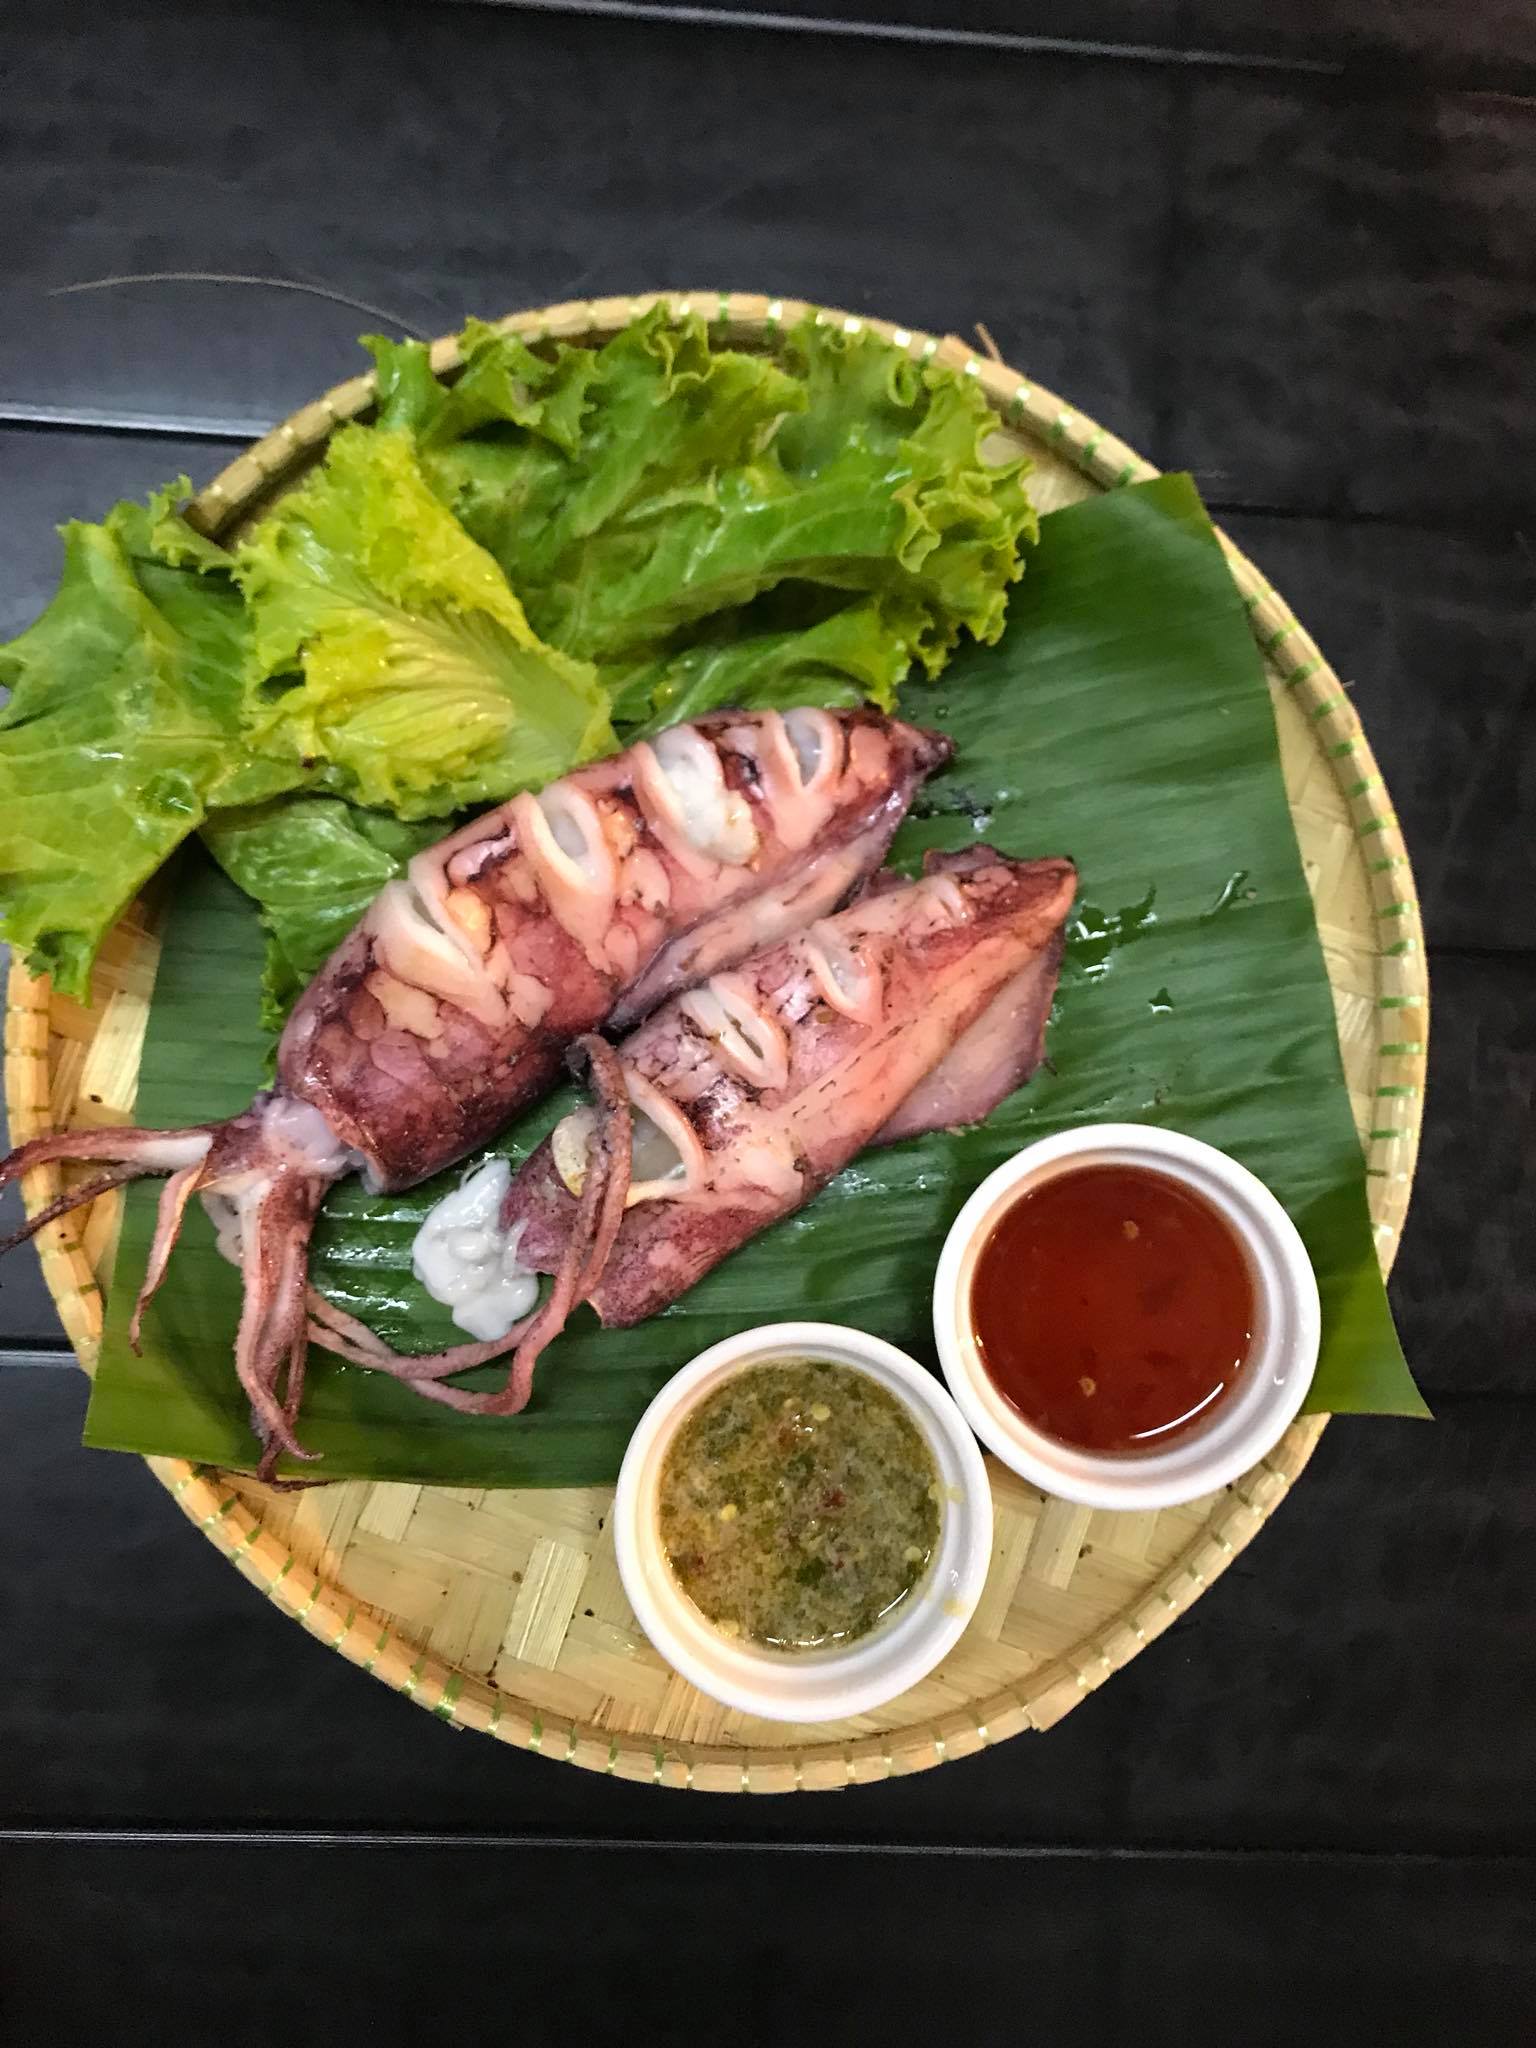 Siam restoran ikan bakar